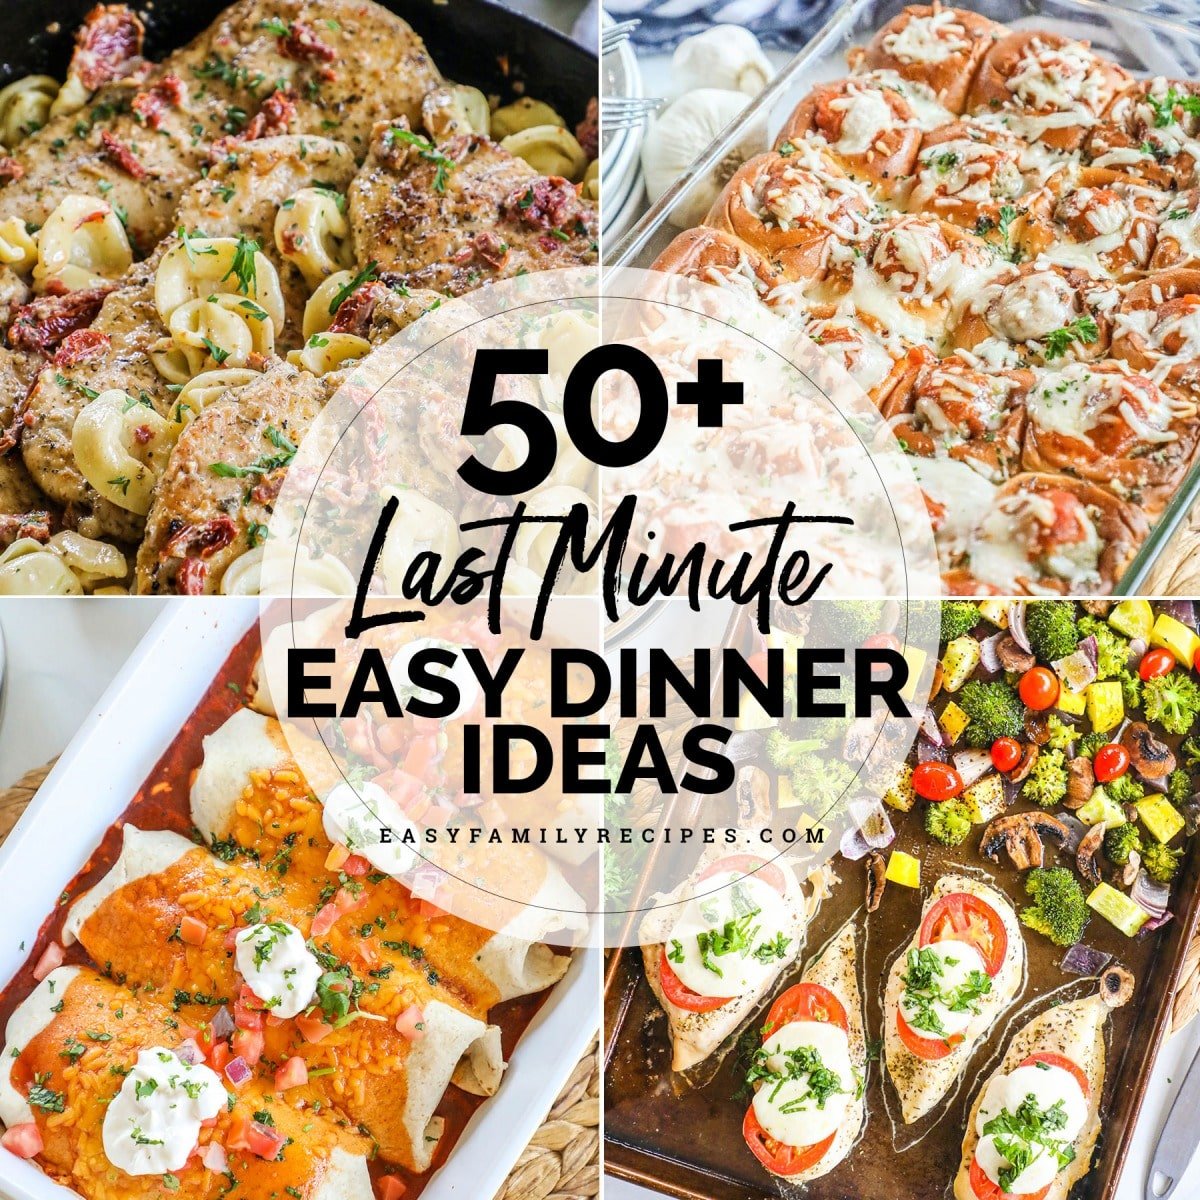 50+ Easy Last Minute Dinner Ideas